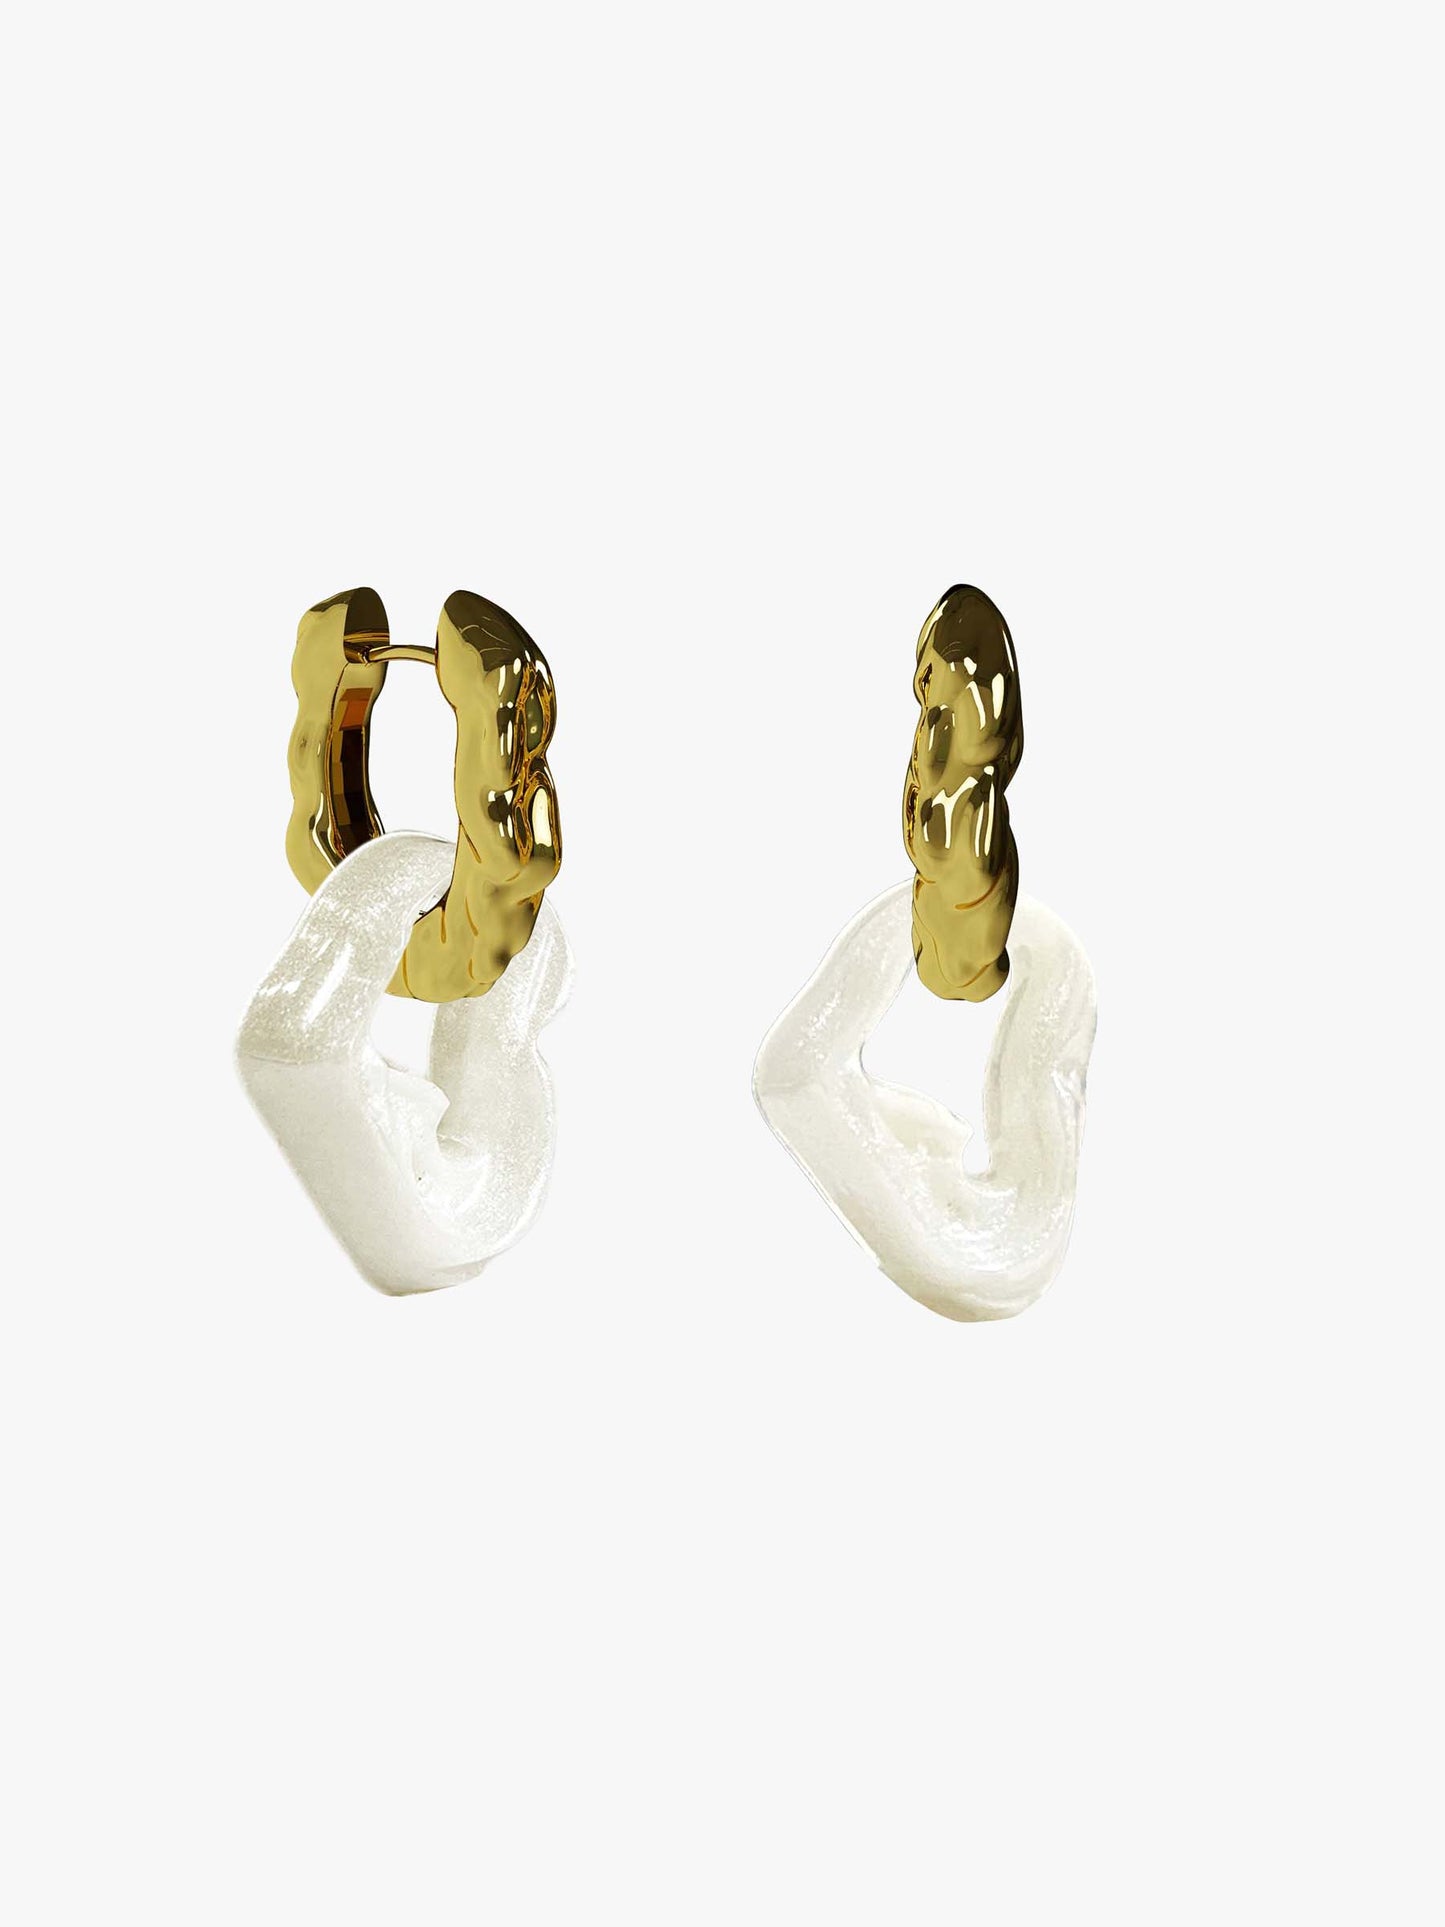 Bia Nus pearl gold earring (pair)